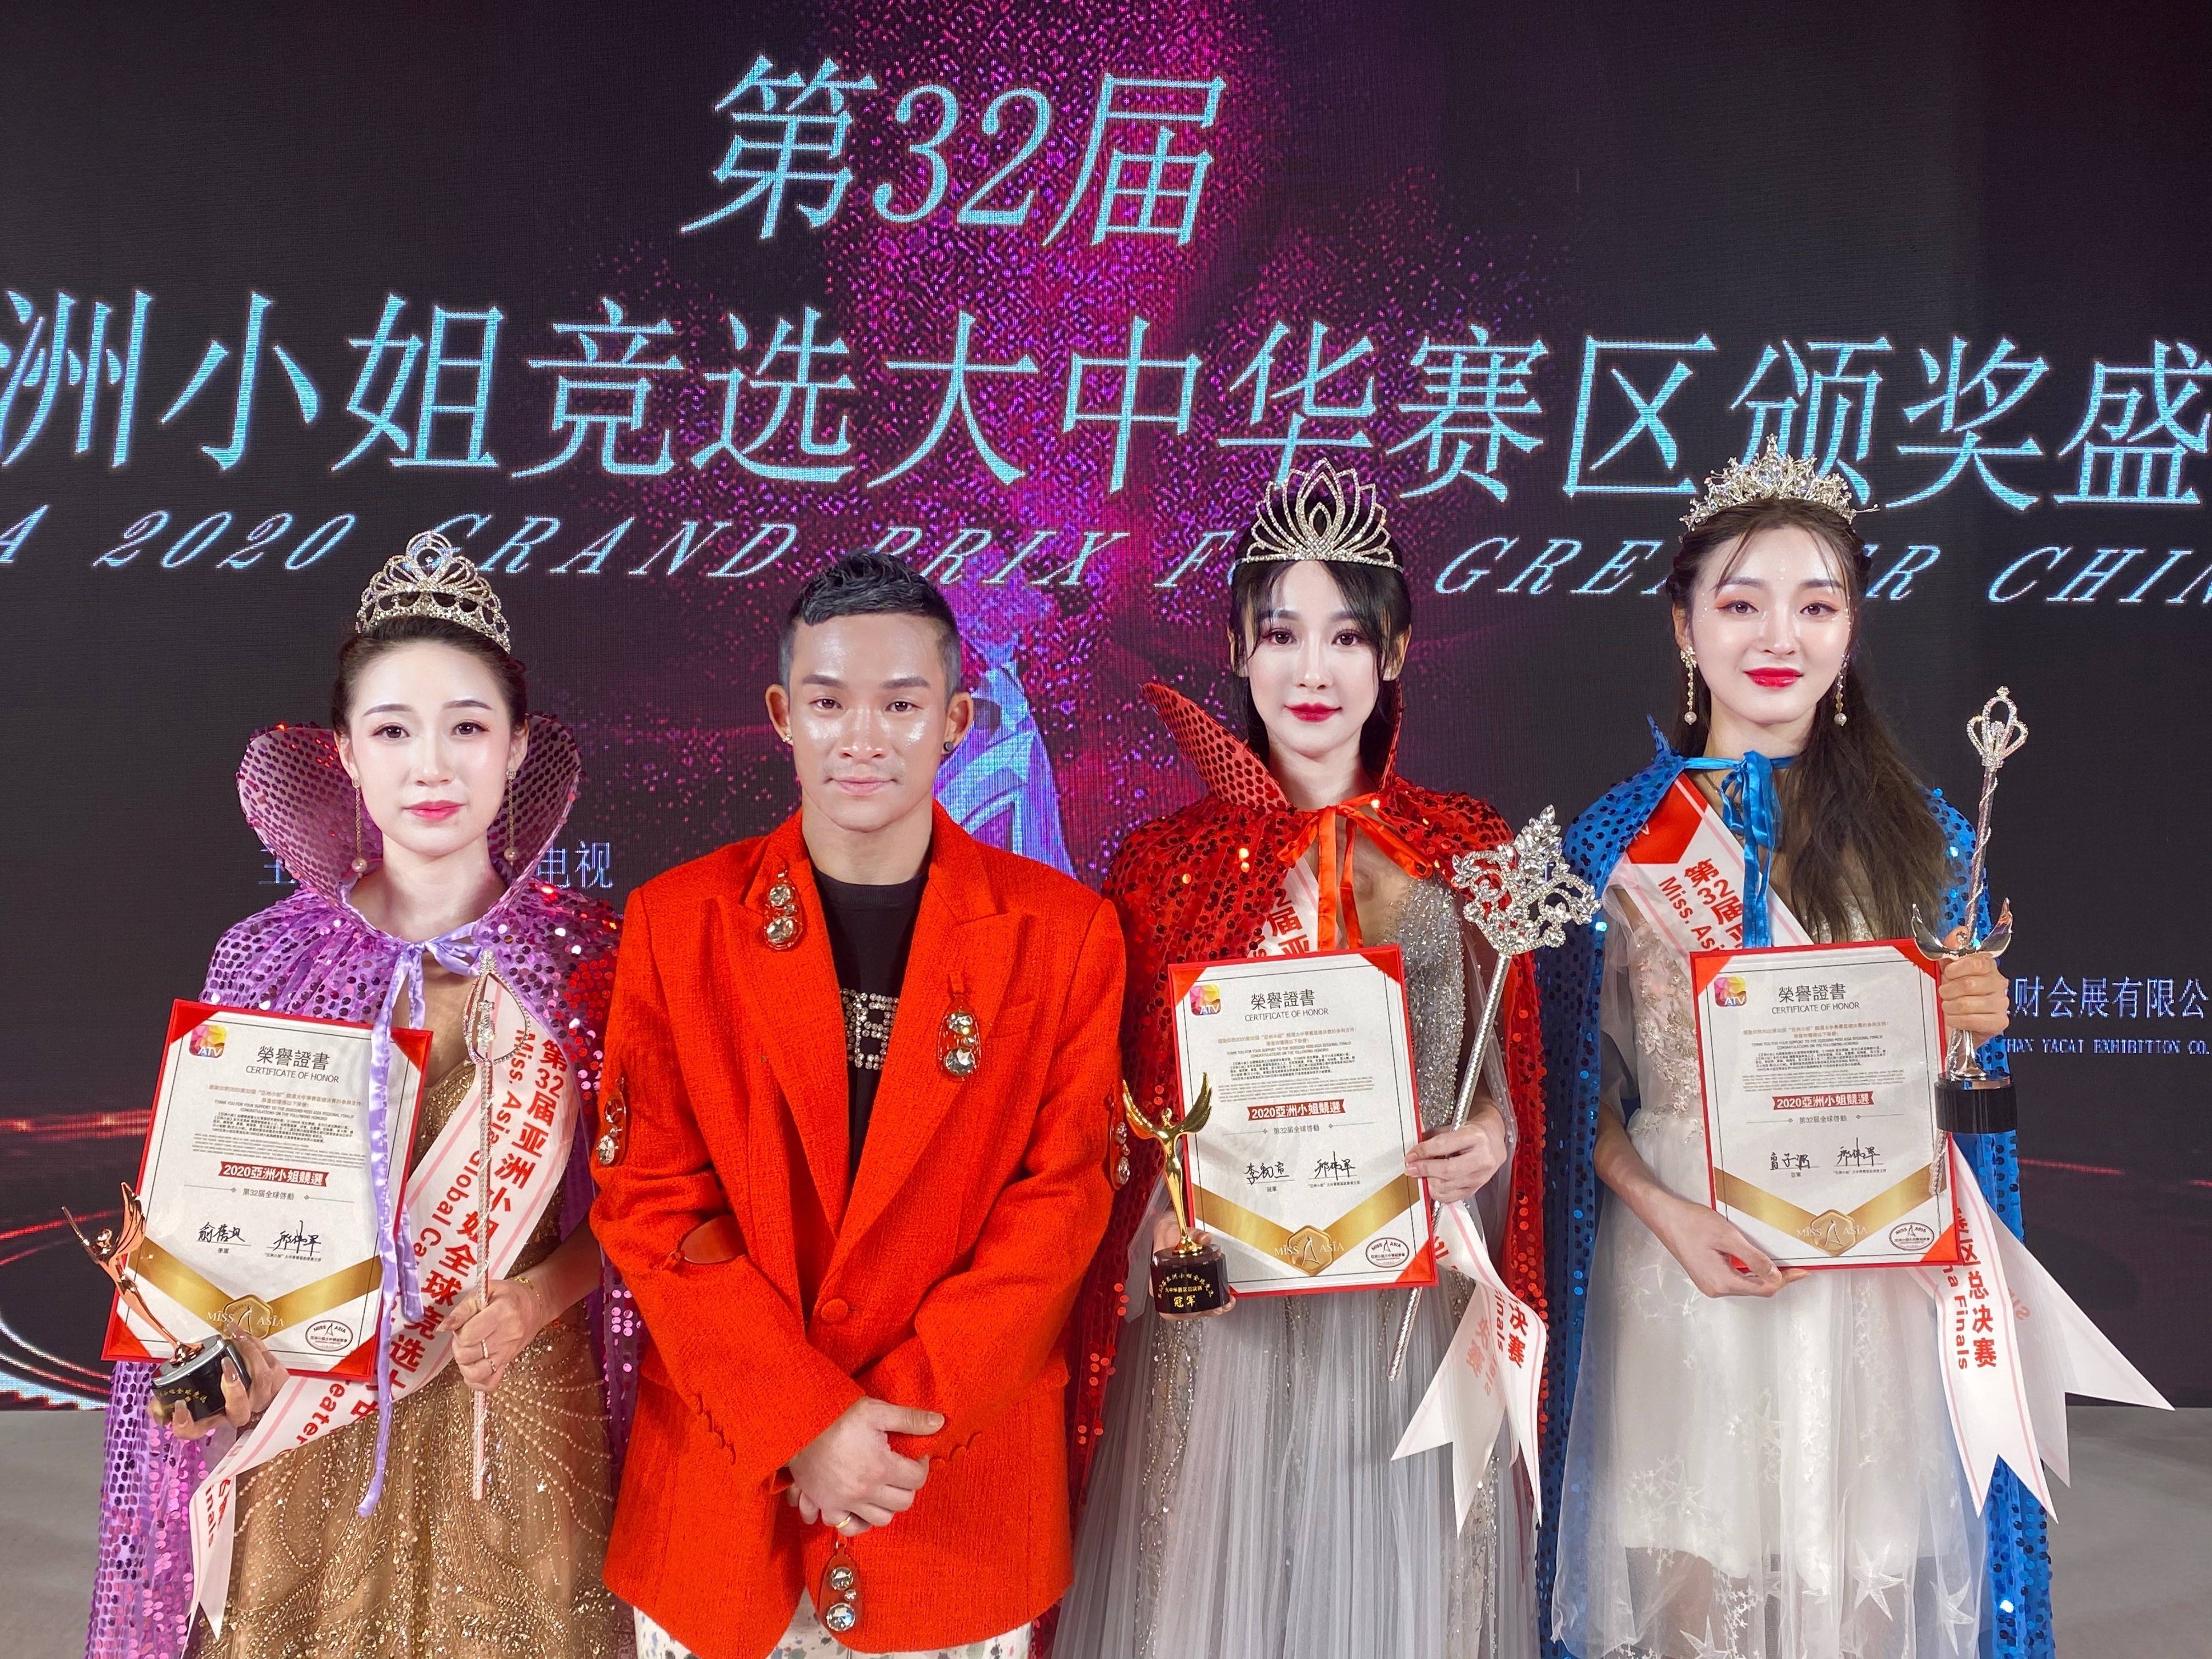 李初宣荣获2020年第32届亚洲小姐大中华区总决赛冠军 颁奖现场大放光彩